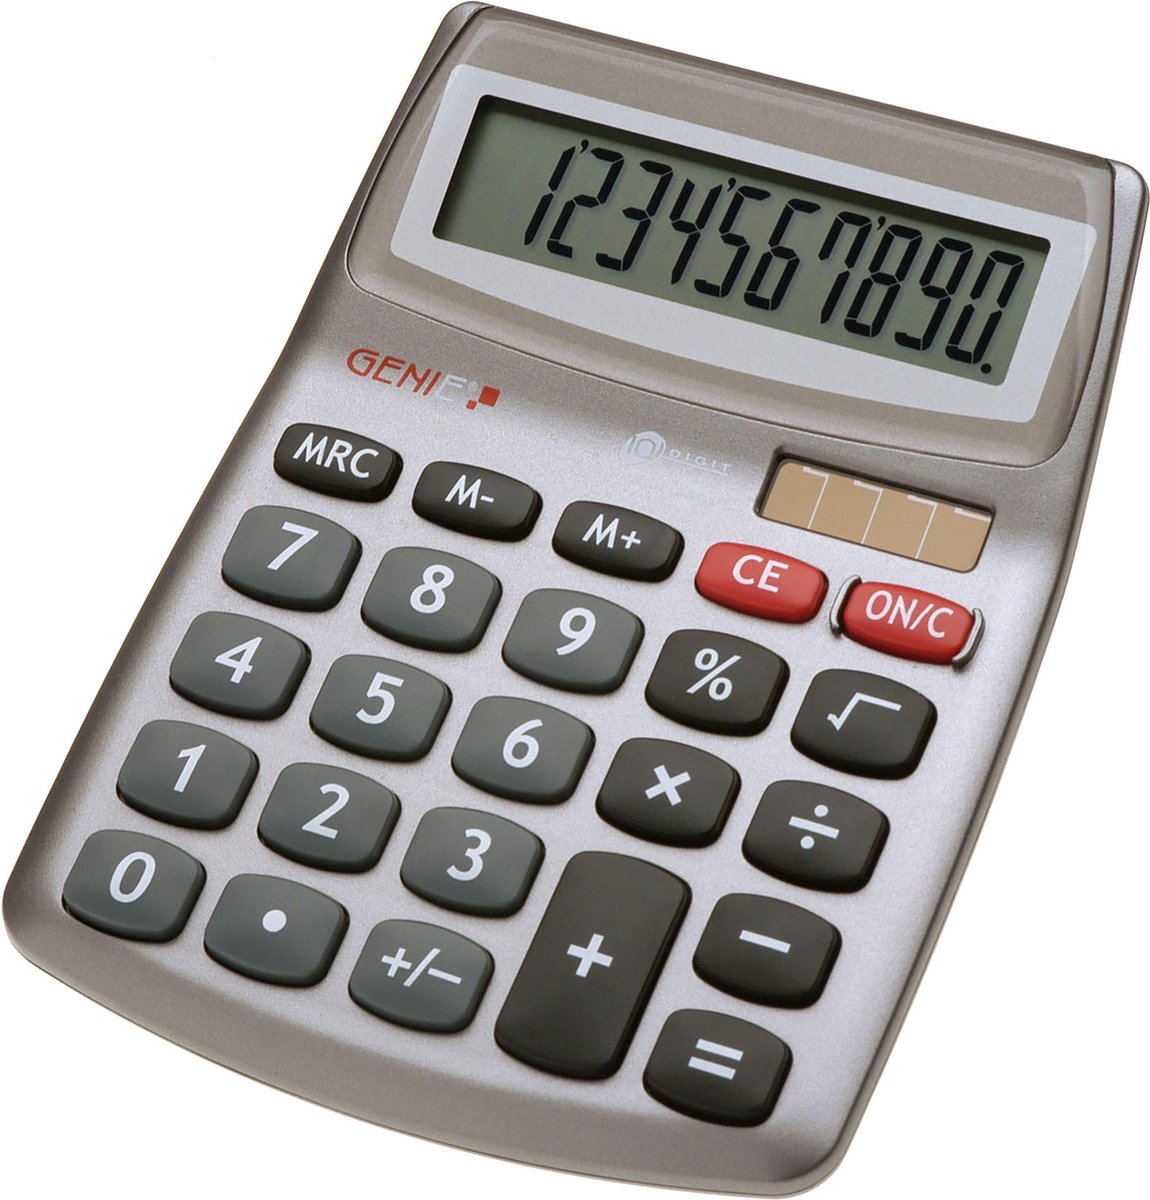 Genie 540 calculator Desktop Rekenmachine met display Grijs